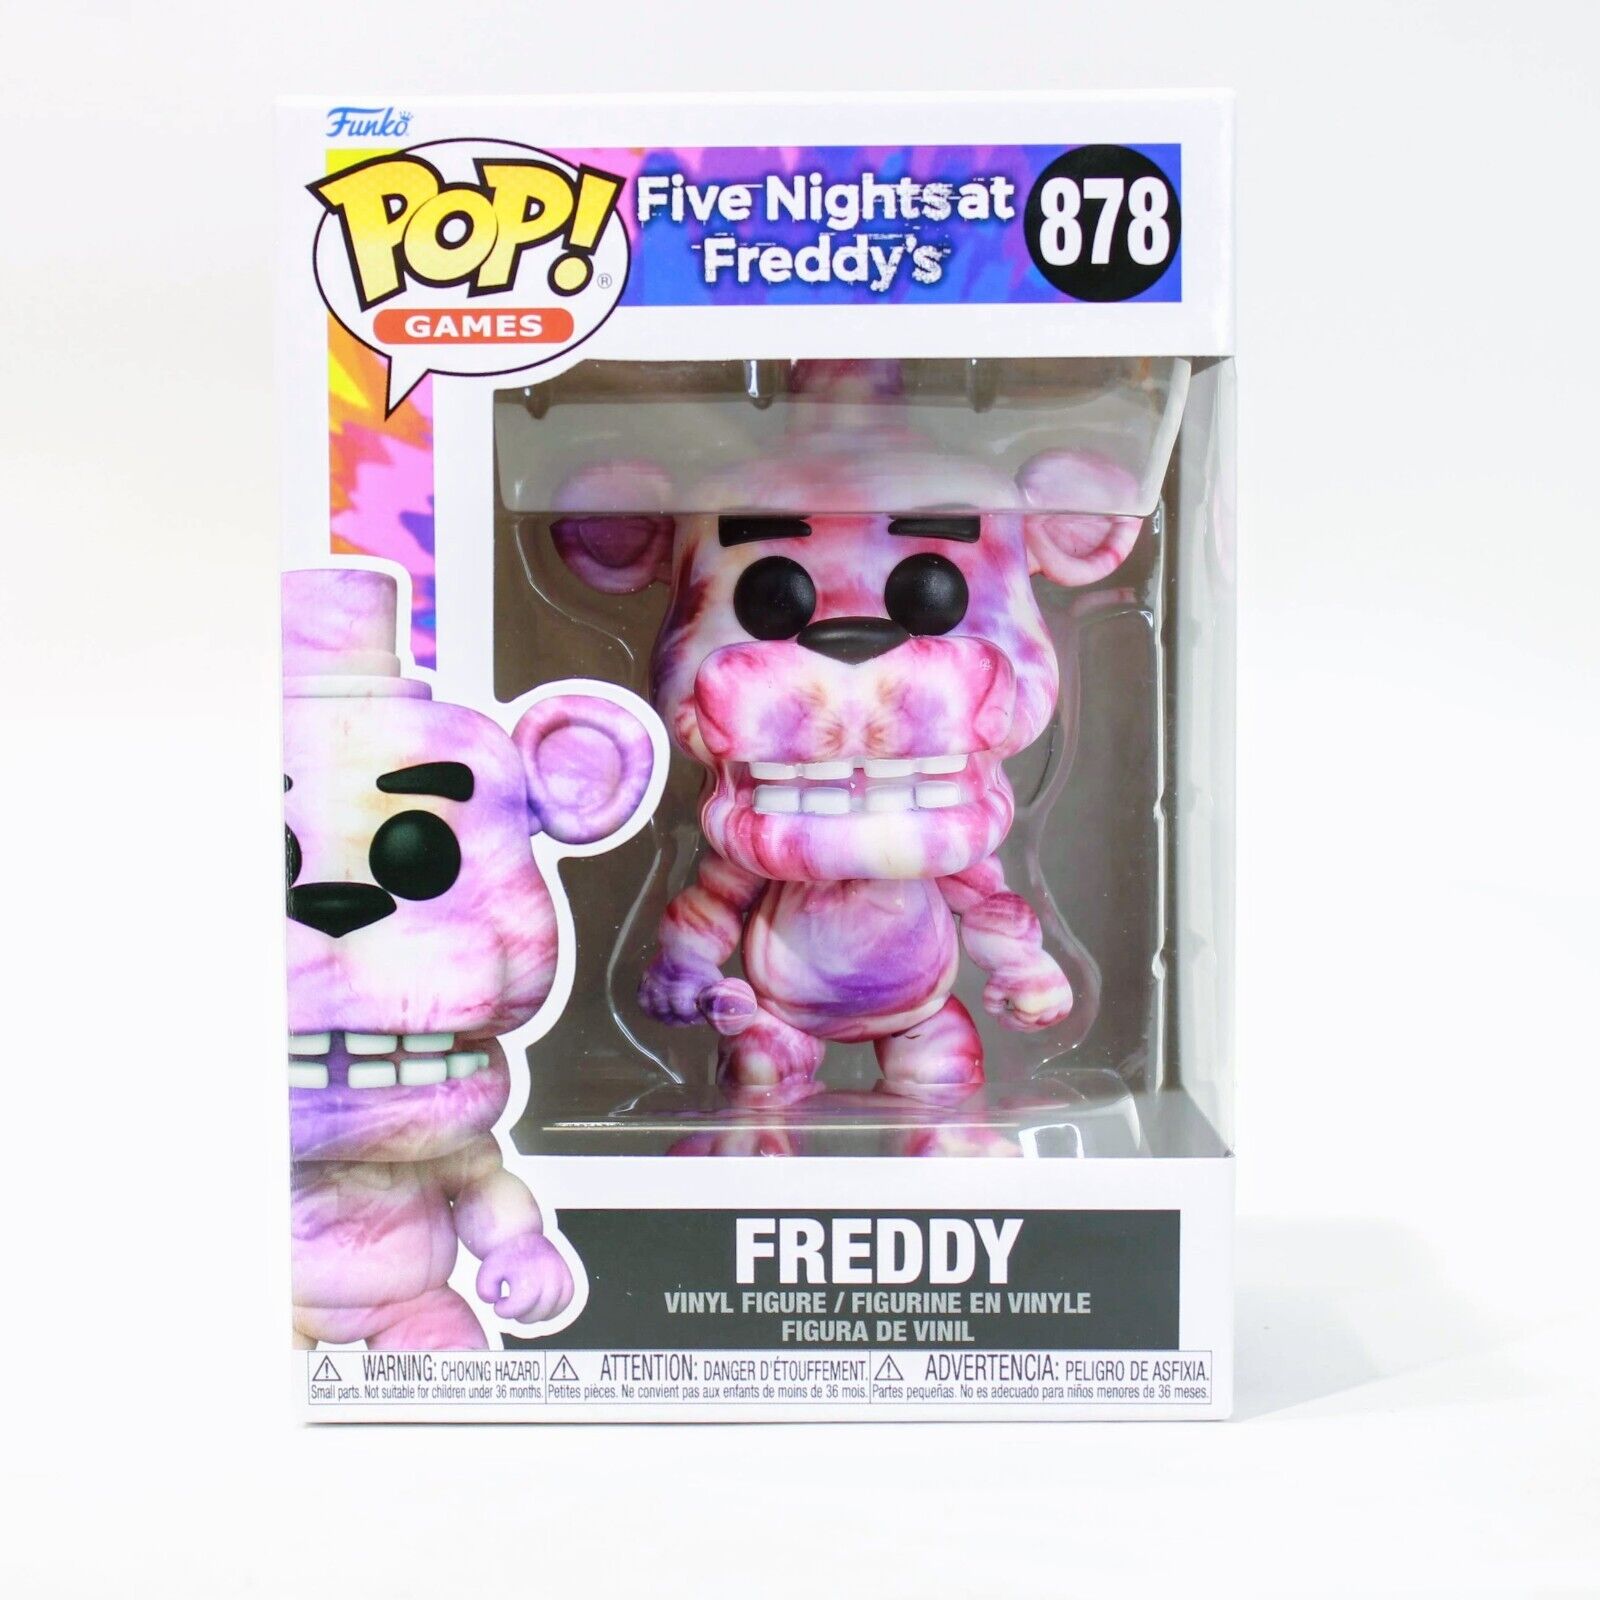 Funko POP! Games: Five Nights at Freddy's Tie-Dye Freddy 4-in